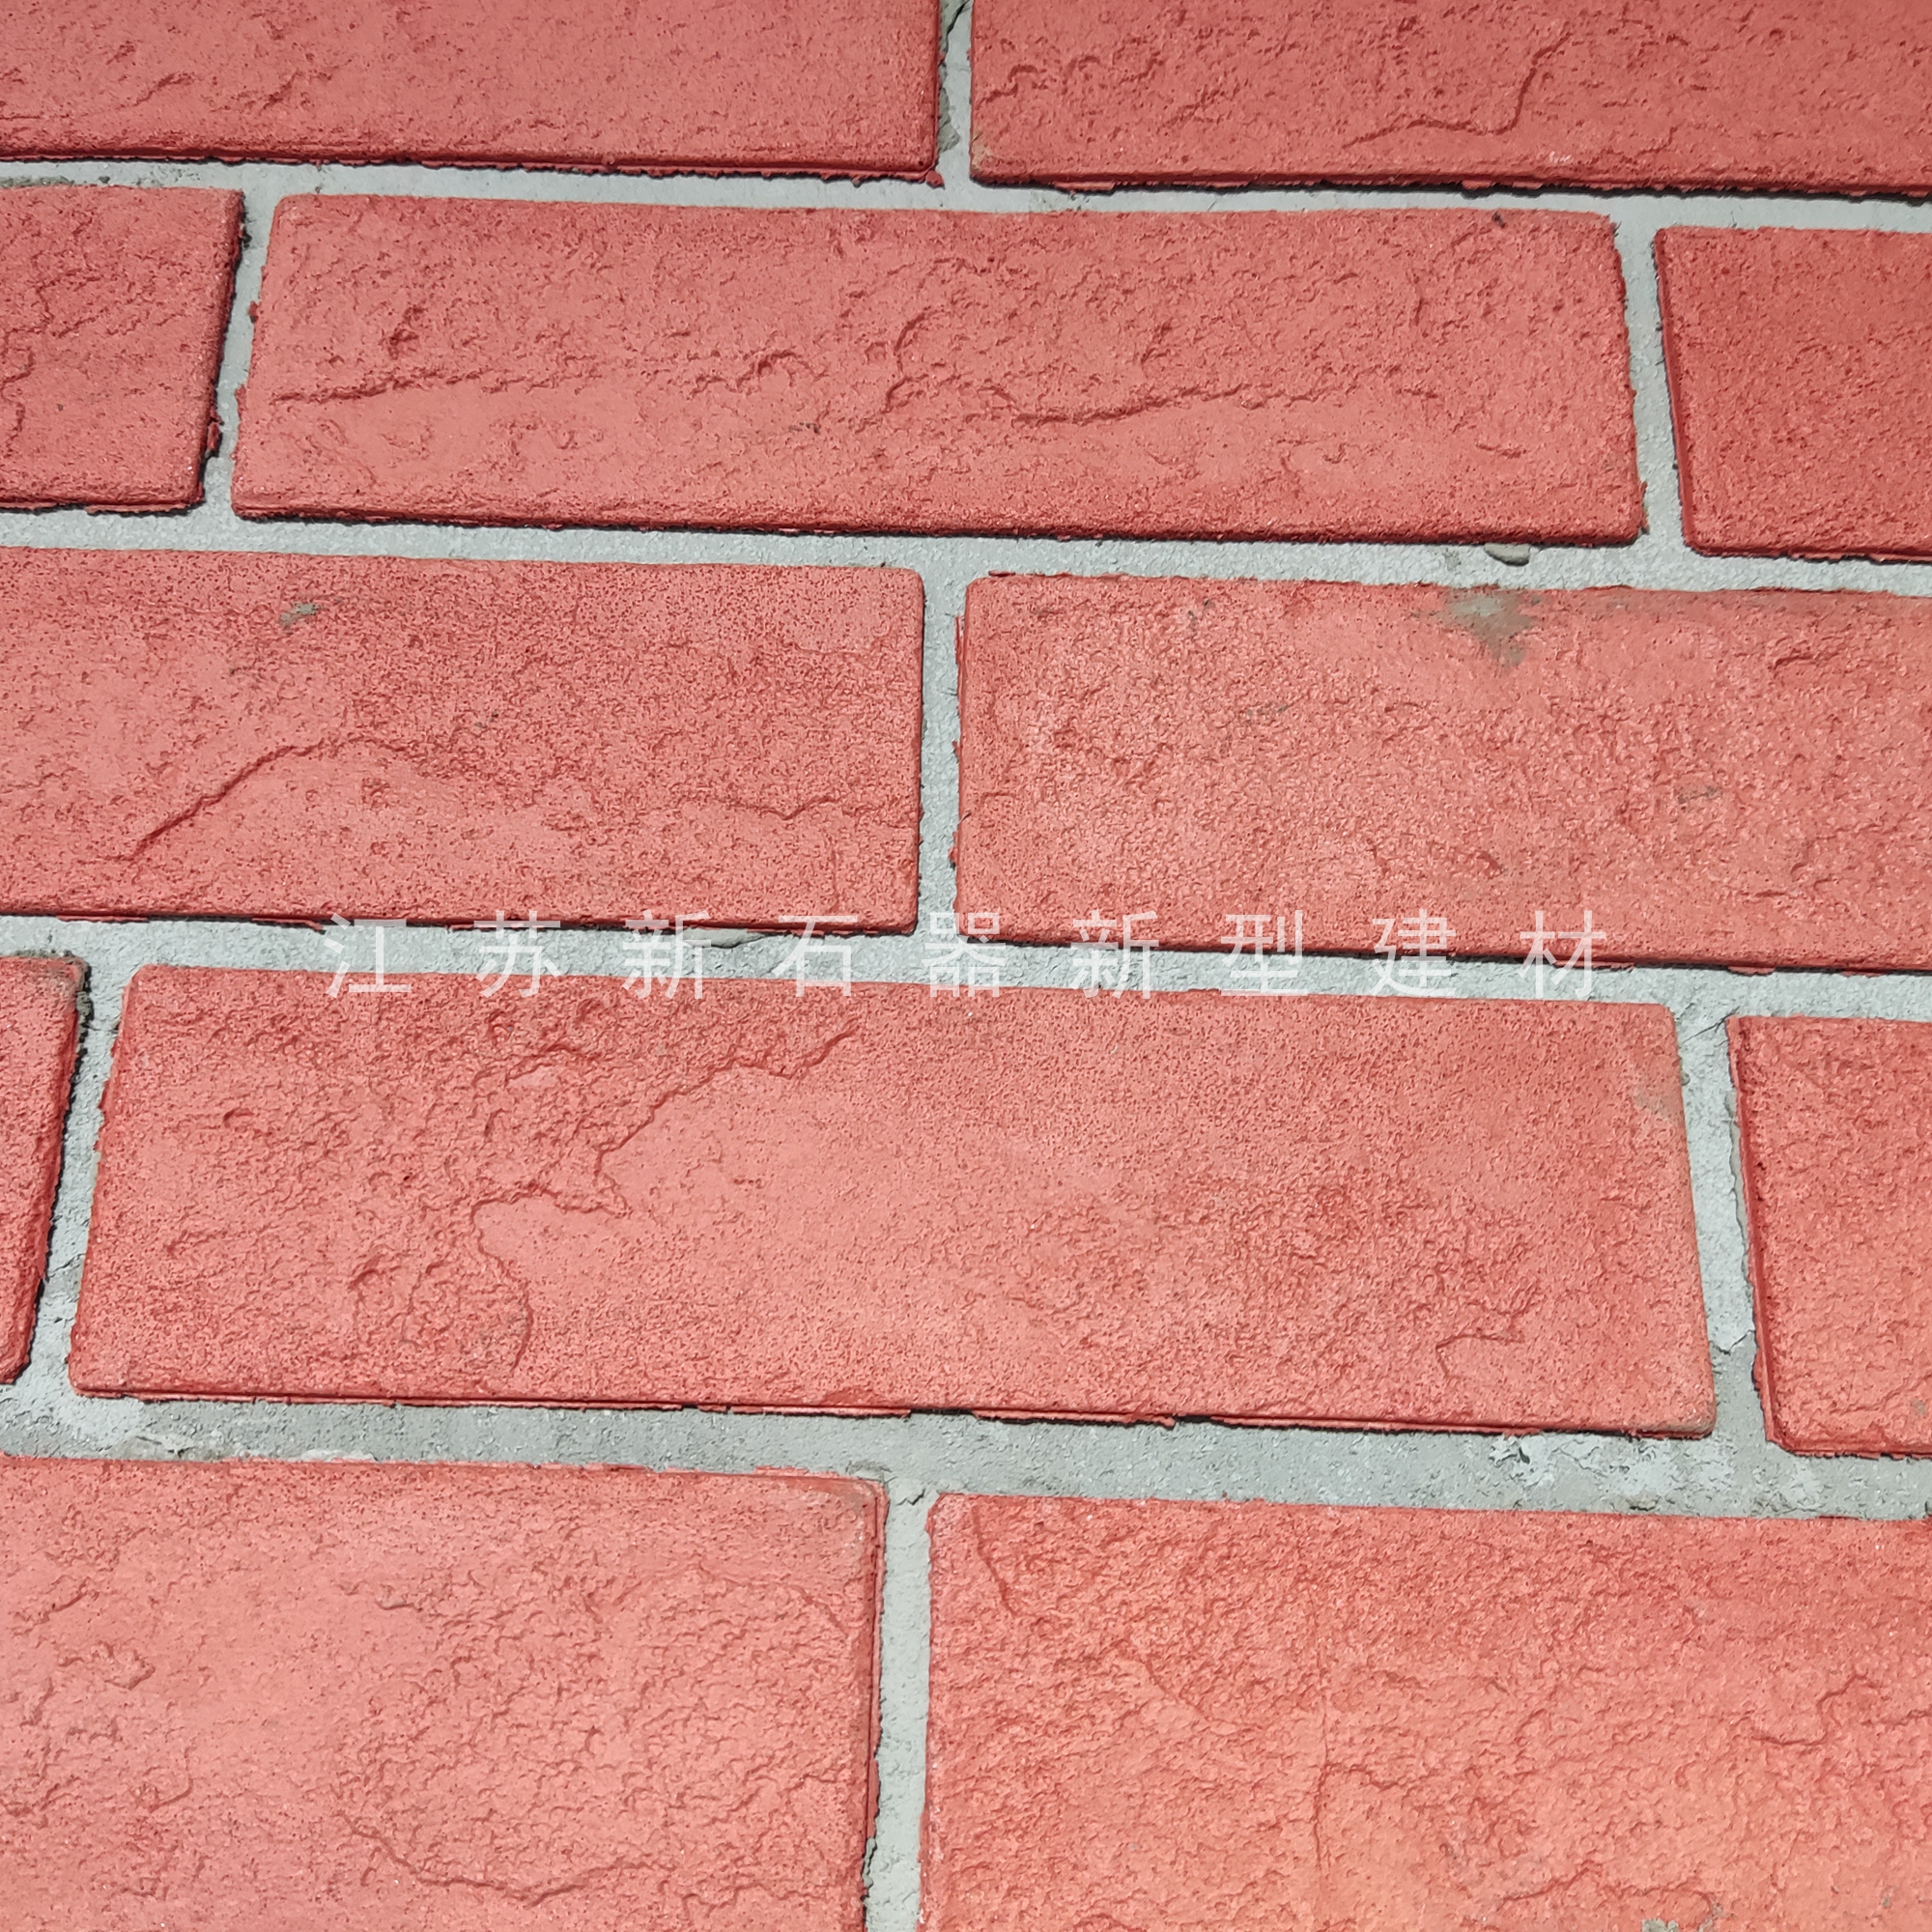 江苏软瓷柔性石材外墙装饰材料厂家江苏软瓷柔性石材外墙装饰材料